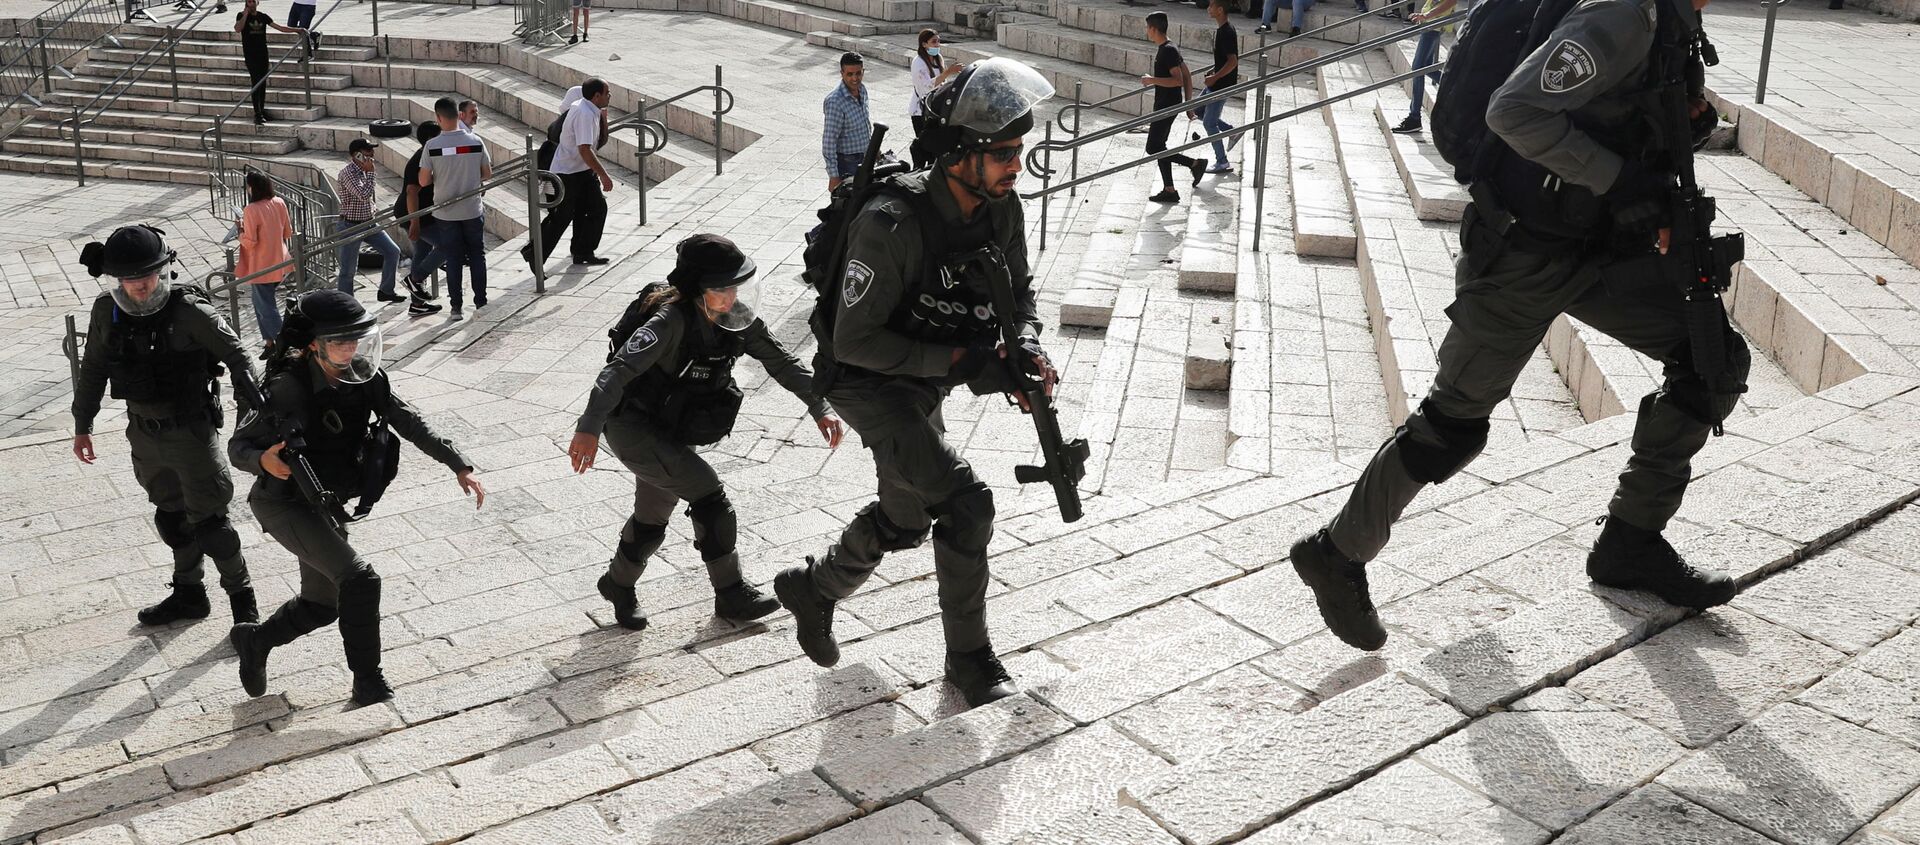 Сотрудники израильской полиции во время столкновений с палестинцами возле мечети Аль-Акса в Иерусалиме - Sputnik Азербайджан, 1920, 10.05.2021